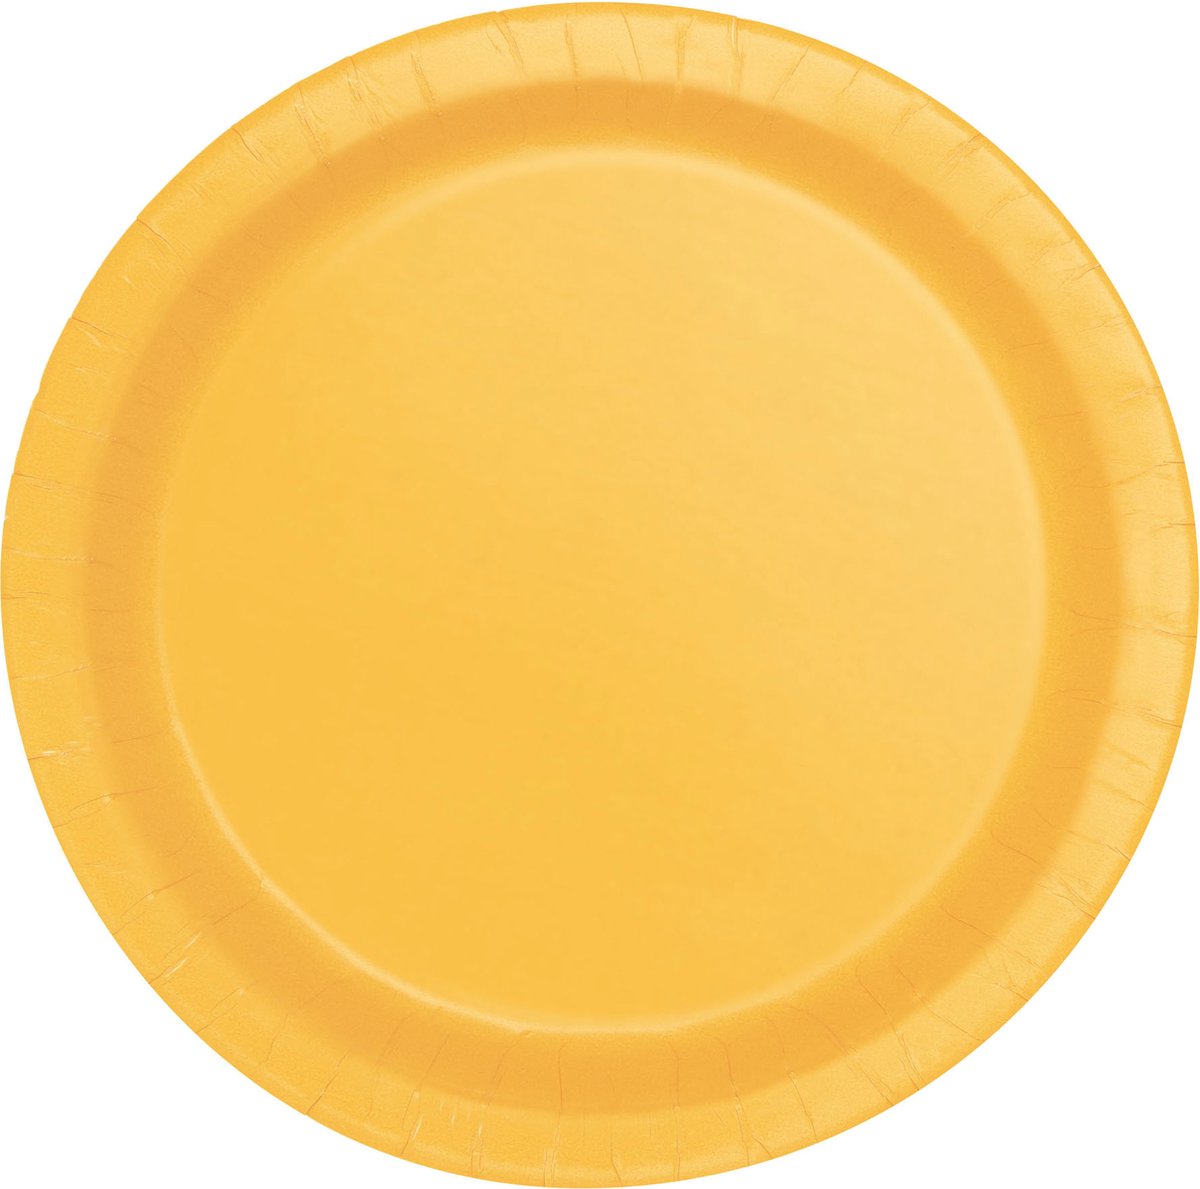 UNIQUE - 16 kartonnen bordjes zonnebloem geel 22 cm